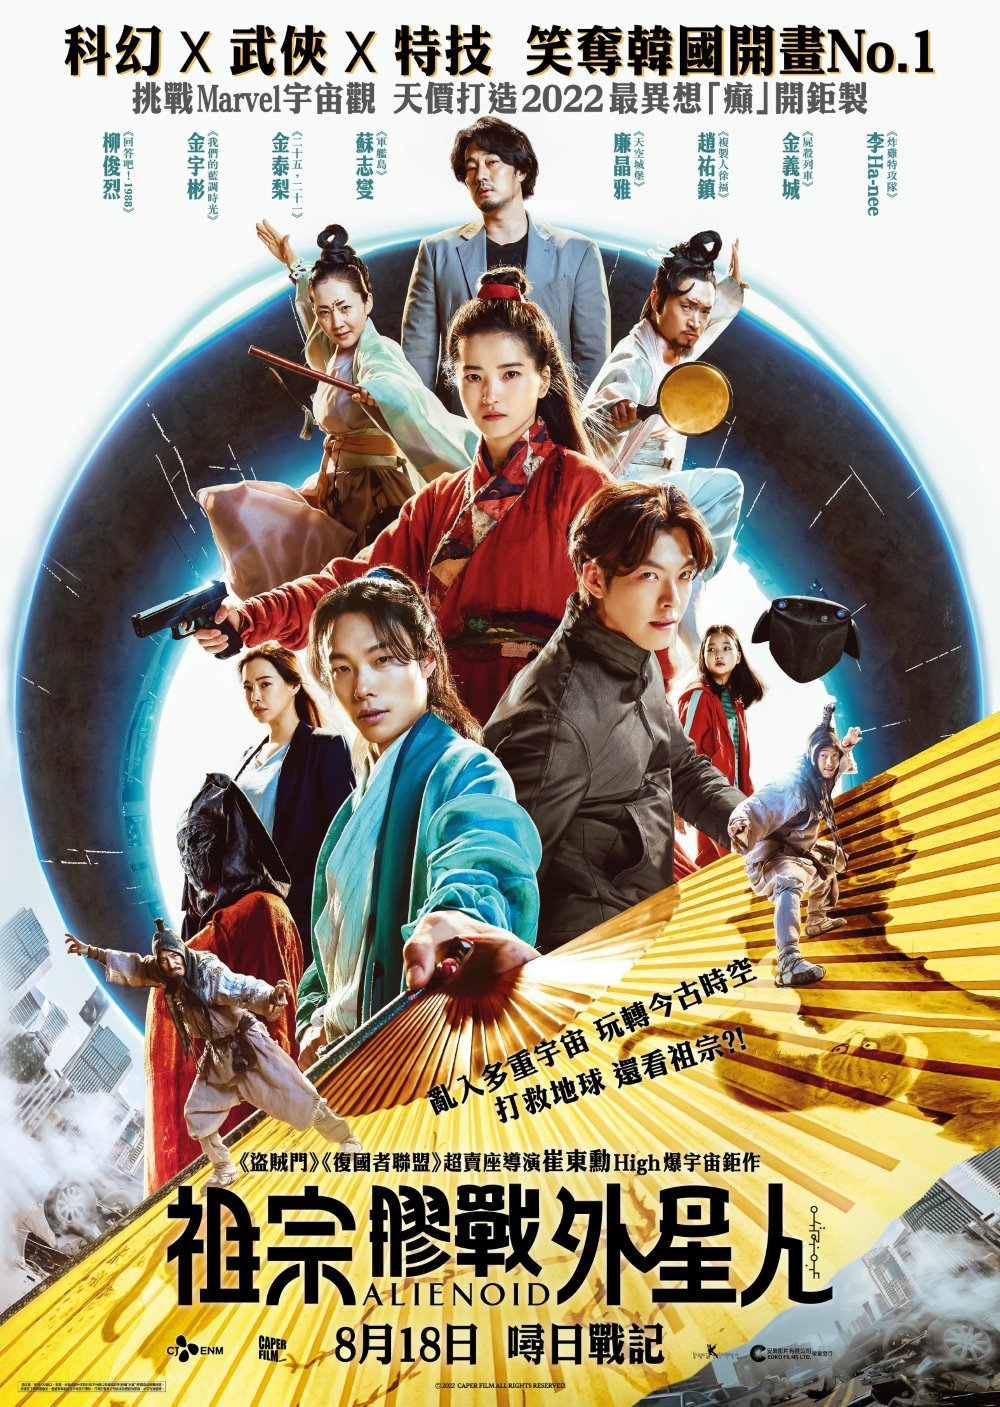 韓片《祖宗膠戰外星人》將於本月18日在香港上映。